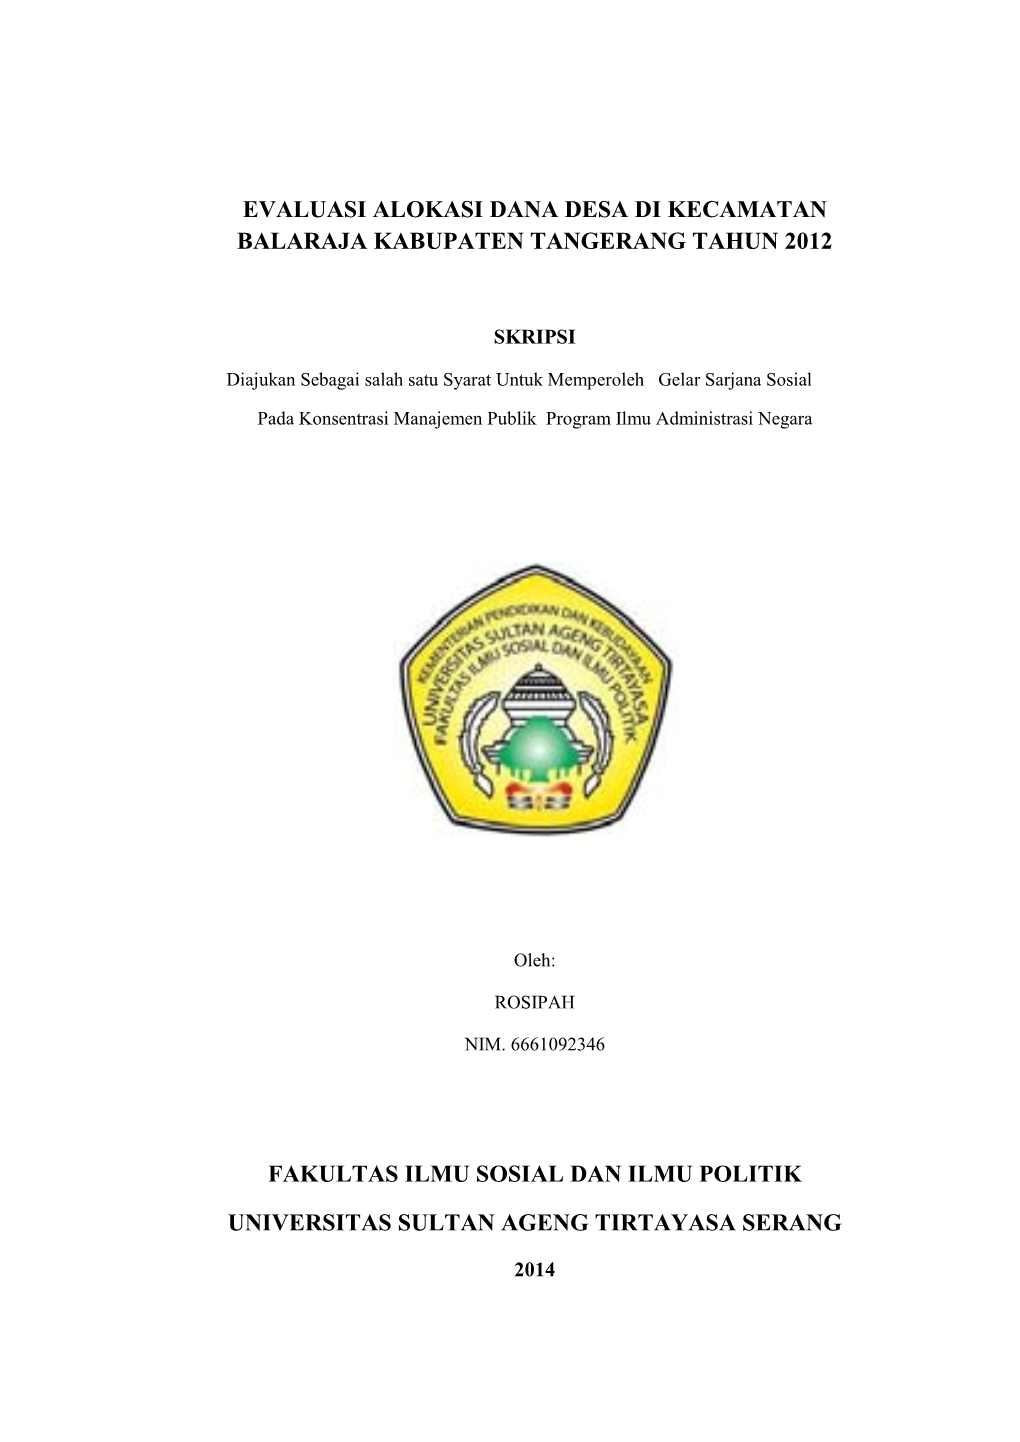 Evaluasi Alokasi Dana Desa Di Kecamatan Balaraja Kabupaten Tangerang Tahun 2012